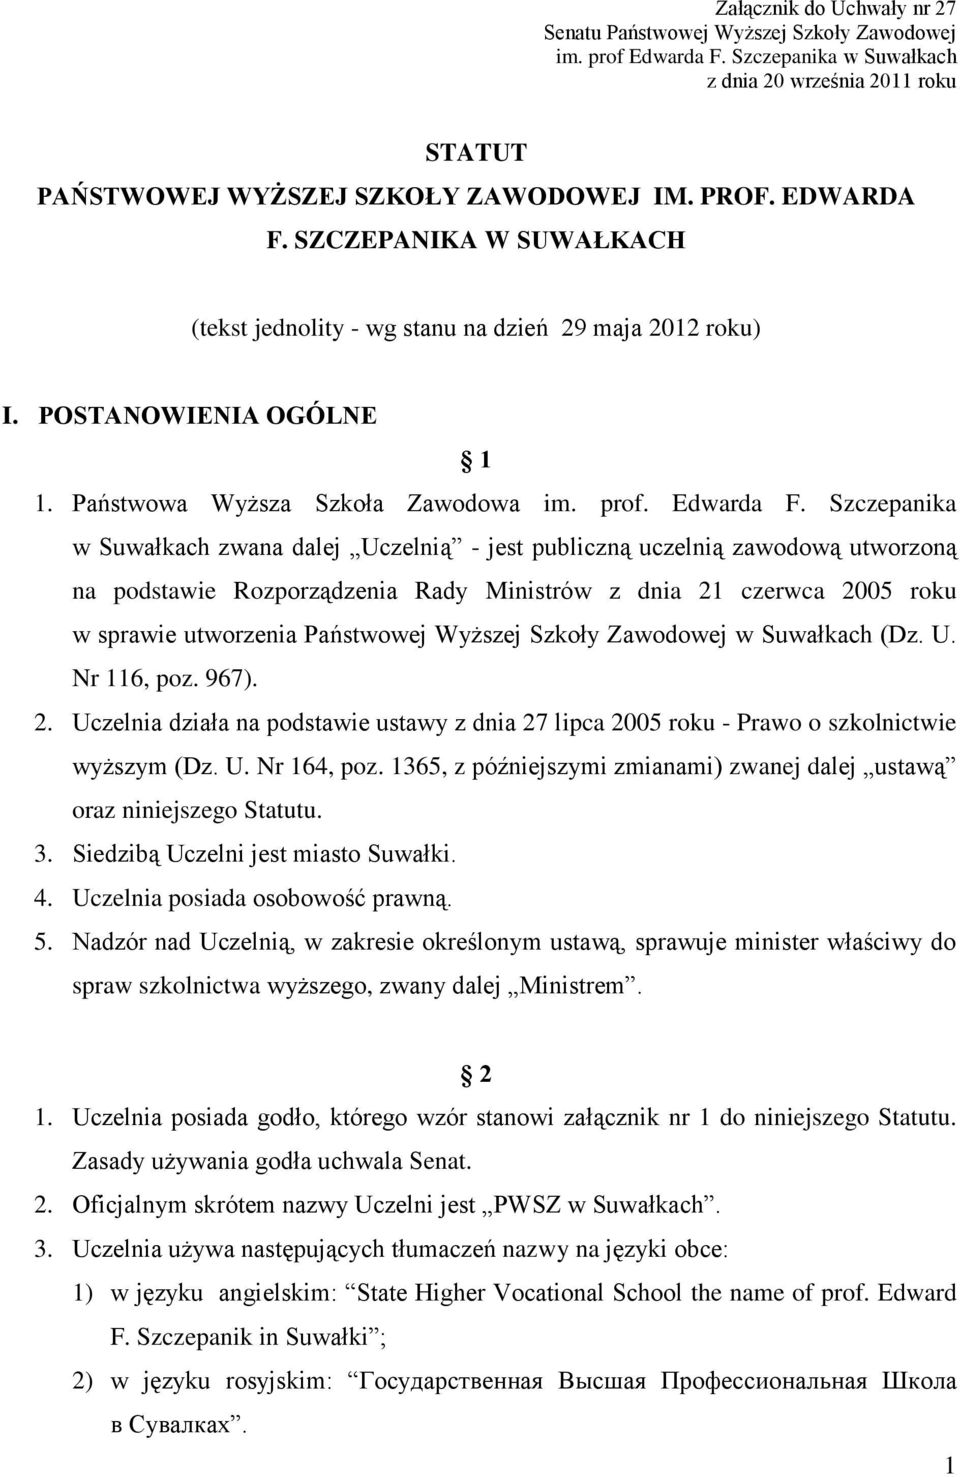 Szczepanika w Suwałkach zwana dalej Uczelnią - jest publiczną uczelnią zawodową utworzoną na podstawie Rozporządzenia Rady Ministrów z dnia 21 czerwca 2005 roku w sprawie utworzenia Państwowej